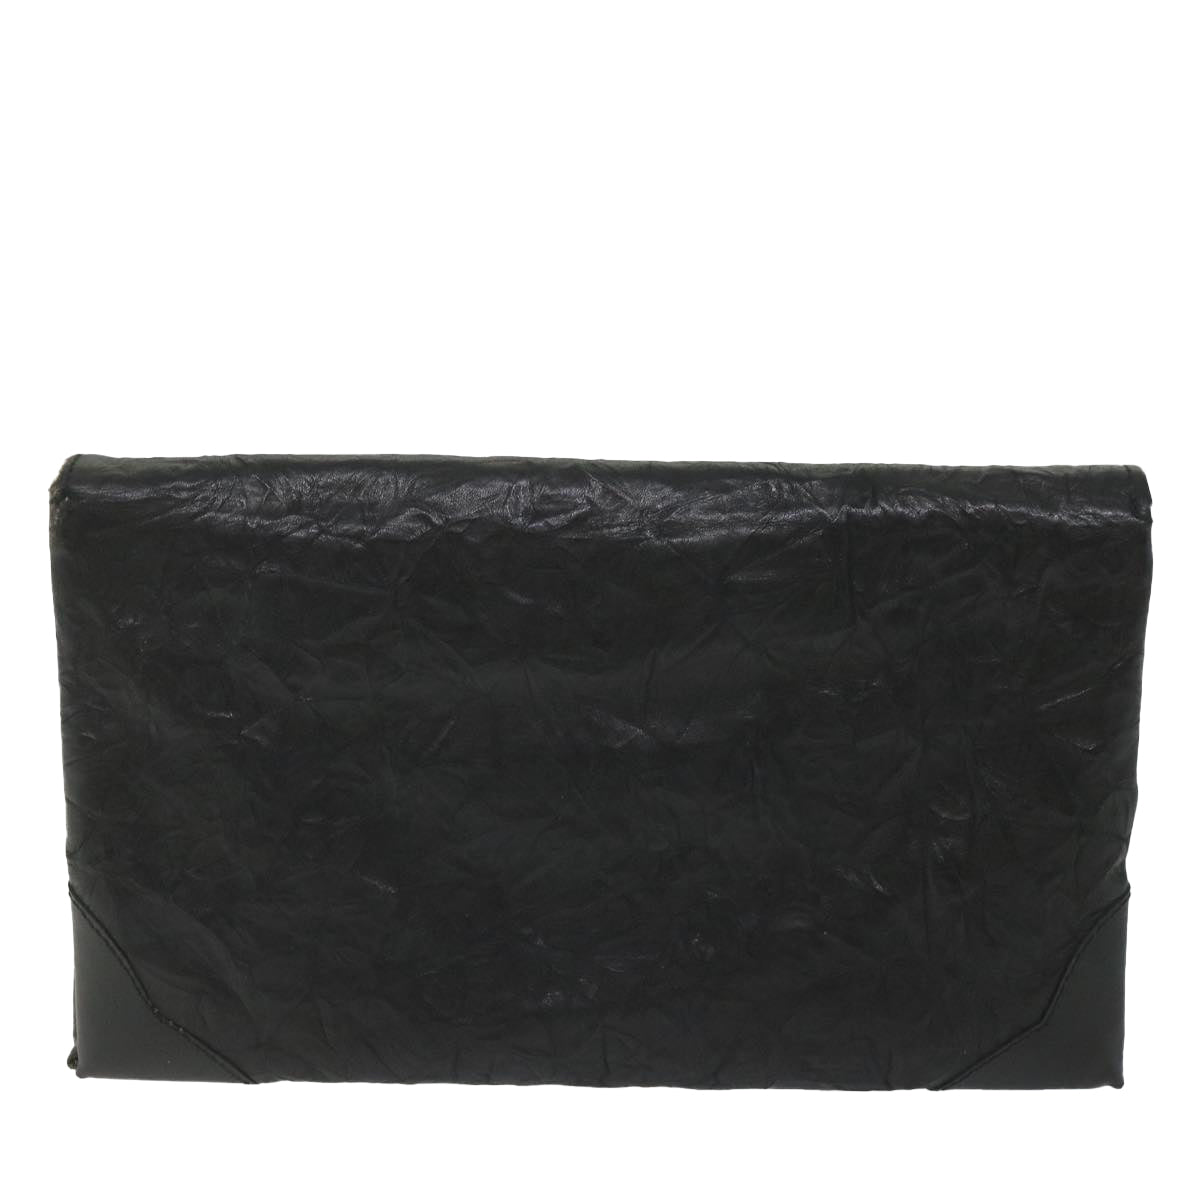 SAINT LAURENT Clutch Bag Leather Black Auth fm2892 - 0